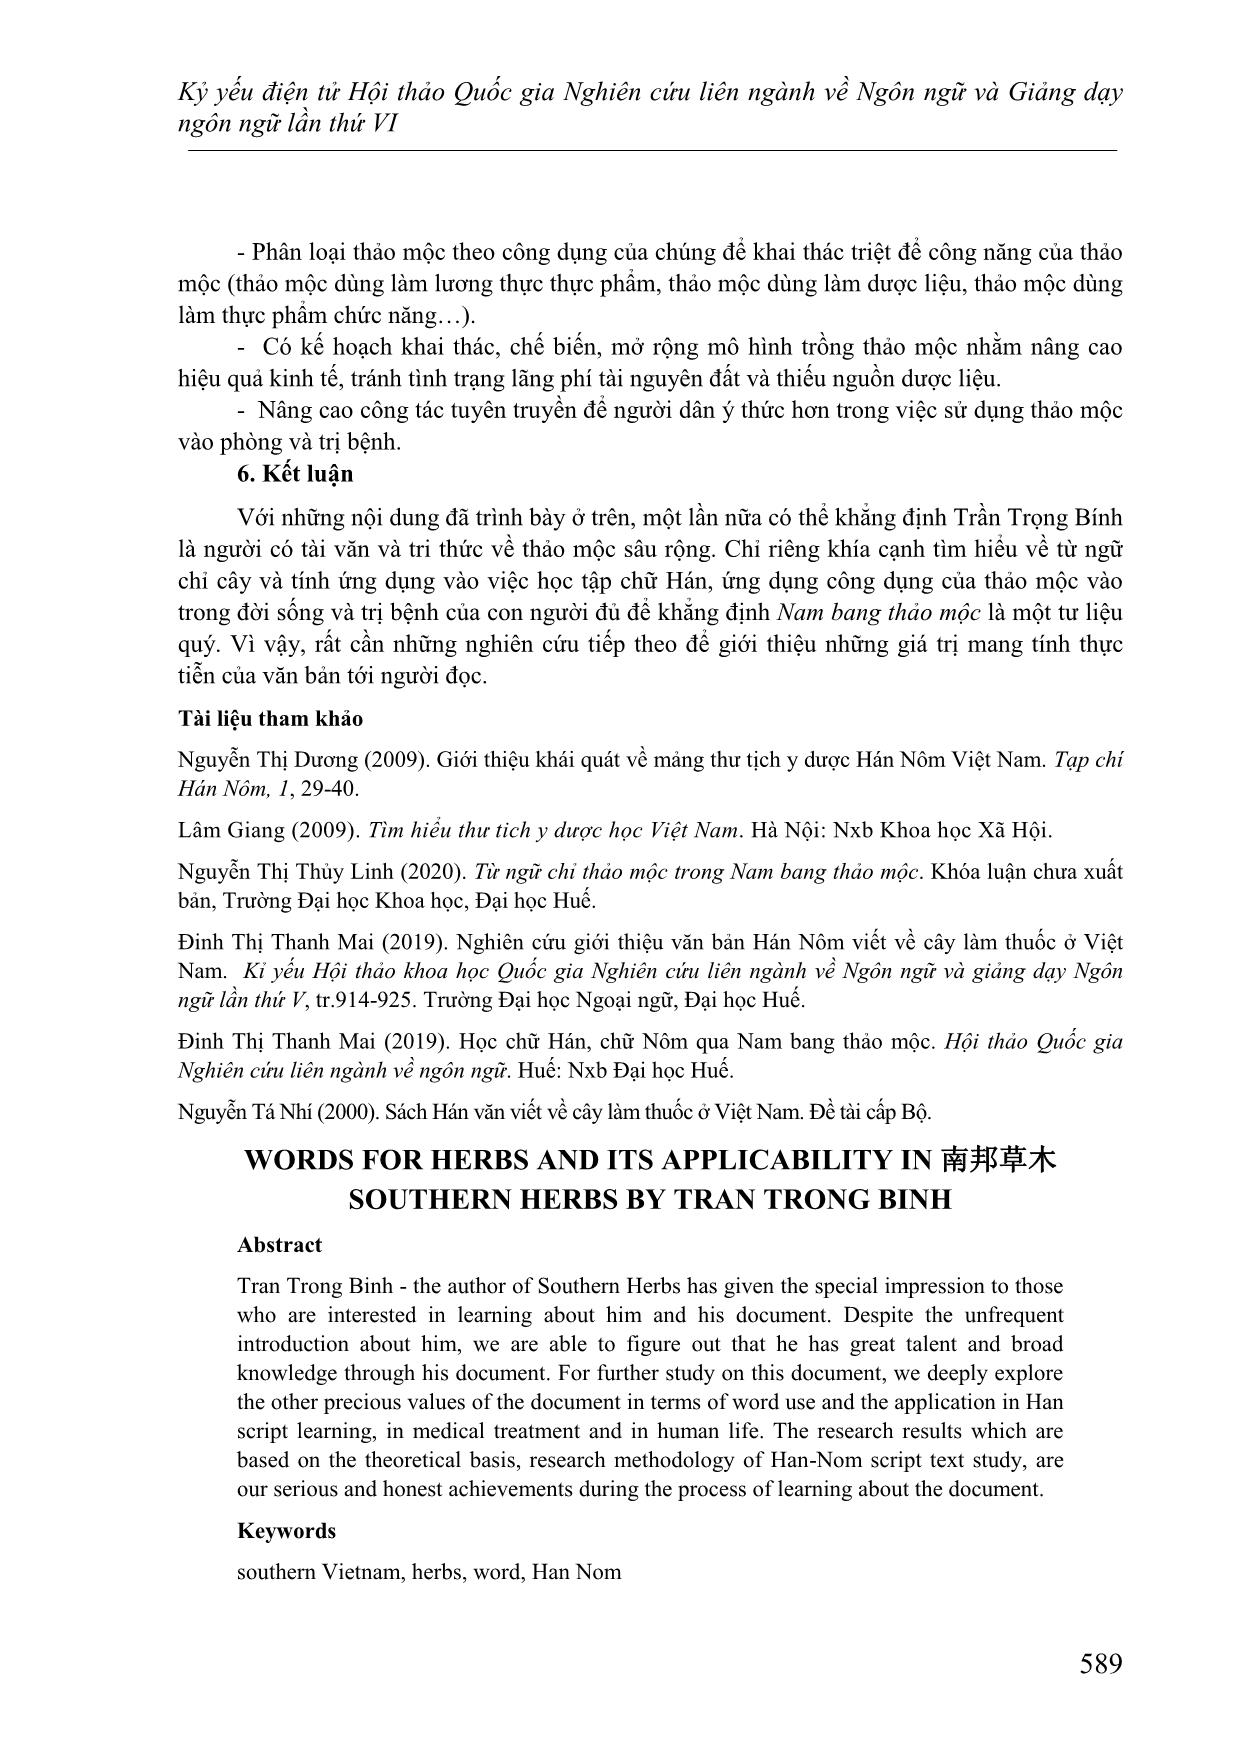 Từ ngữ chỉ thảo mộc và tính ứng dụng trong 南邦草木 Nam bang thảo mộc của Trần Trọng Bính trang 9